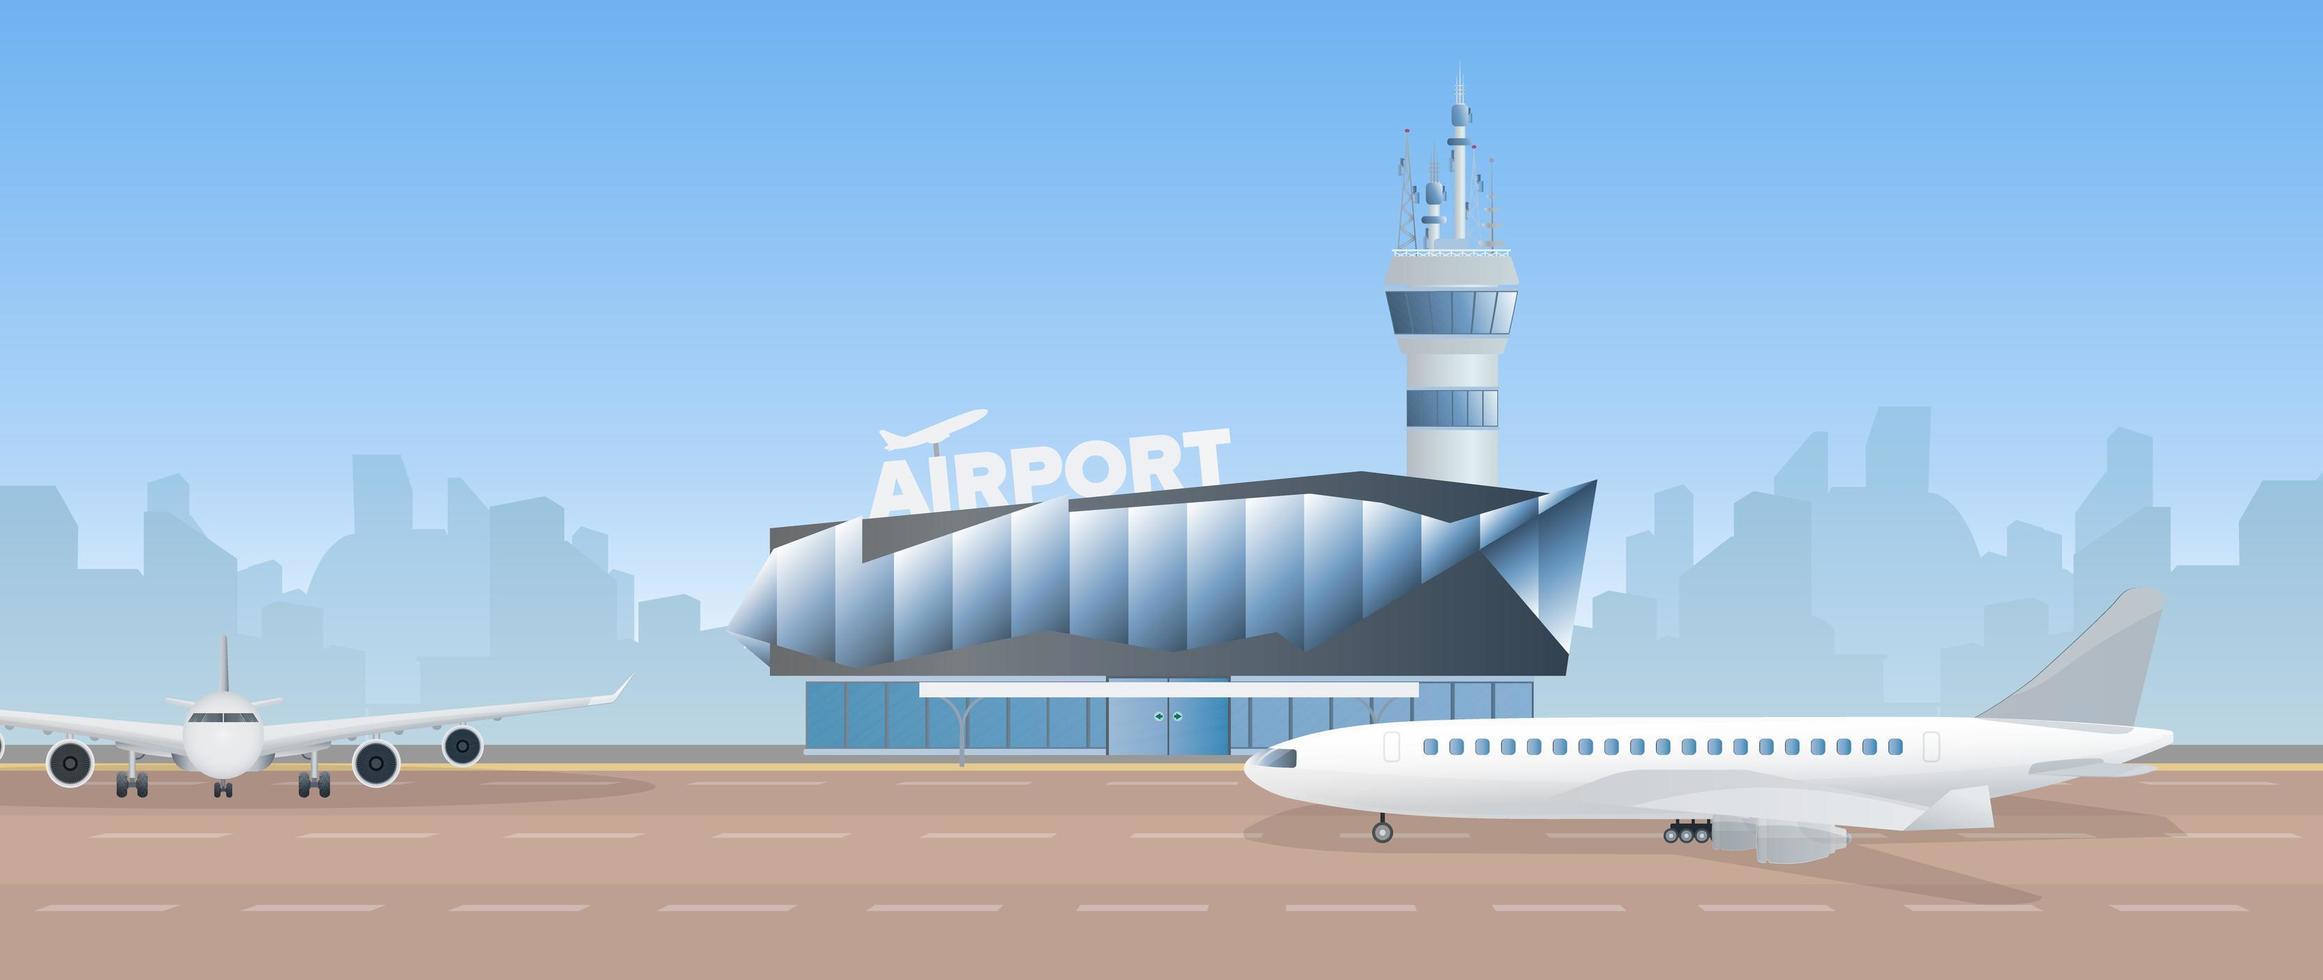 aeroporto moderno. pista. avião na pista. aeroporto em um estilo simples. silhueta da cidade. ilustração vetorial vetor